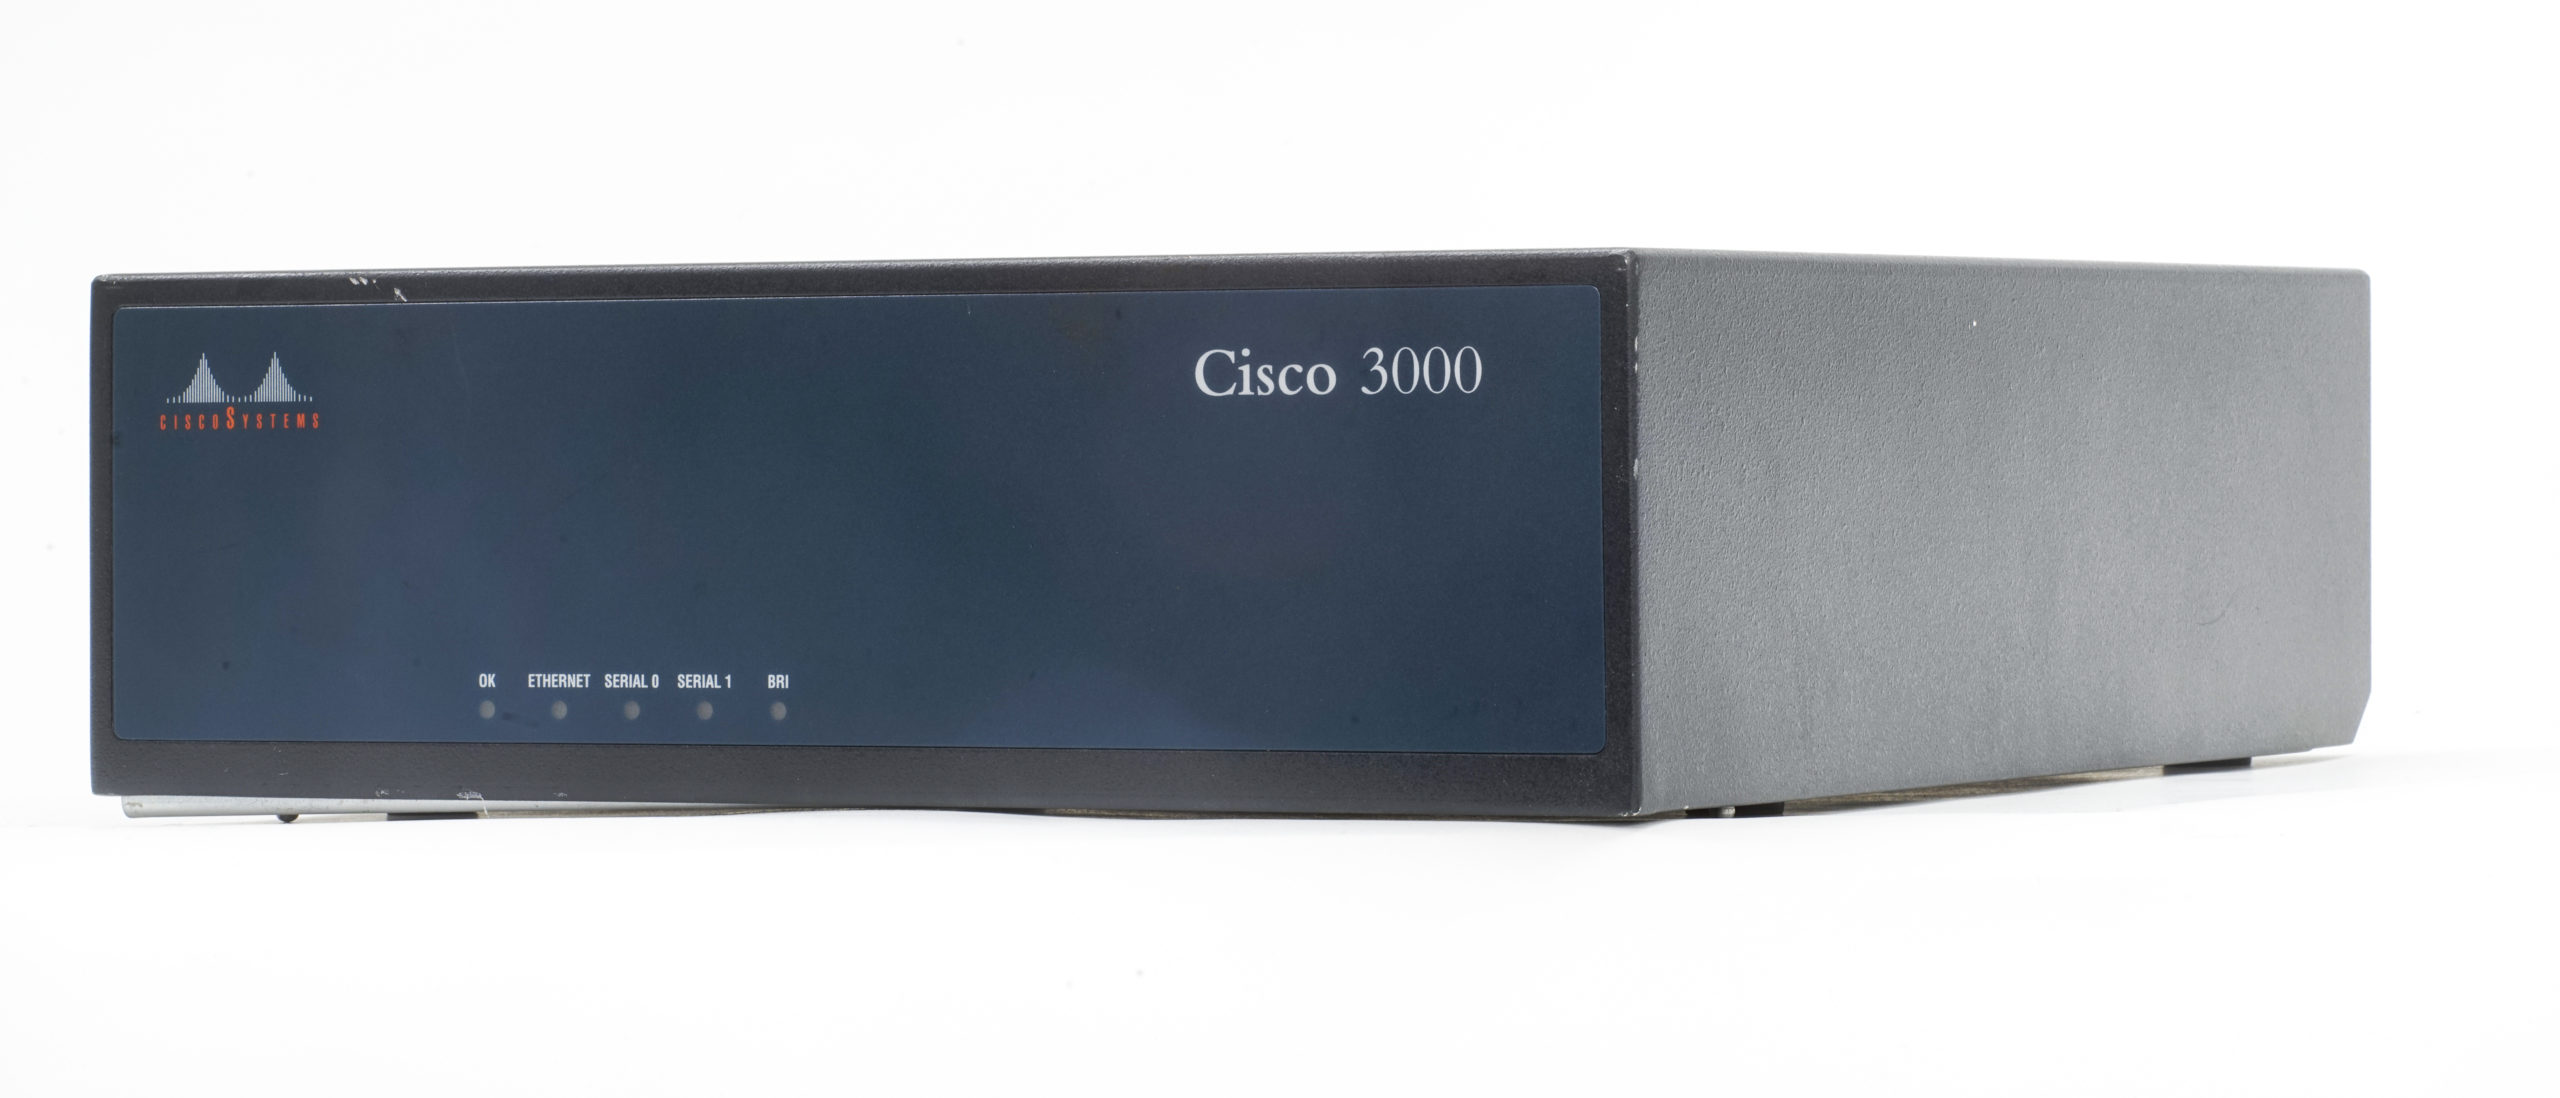 Cisco 3000 from a three quarter view